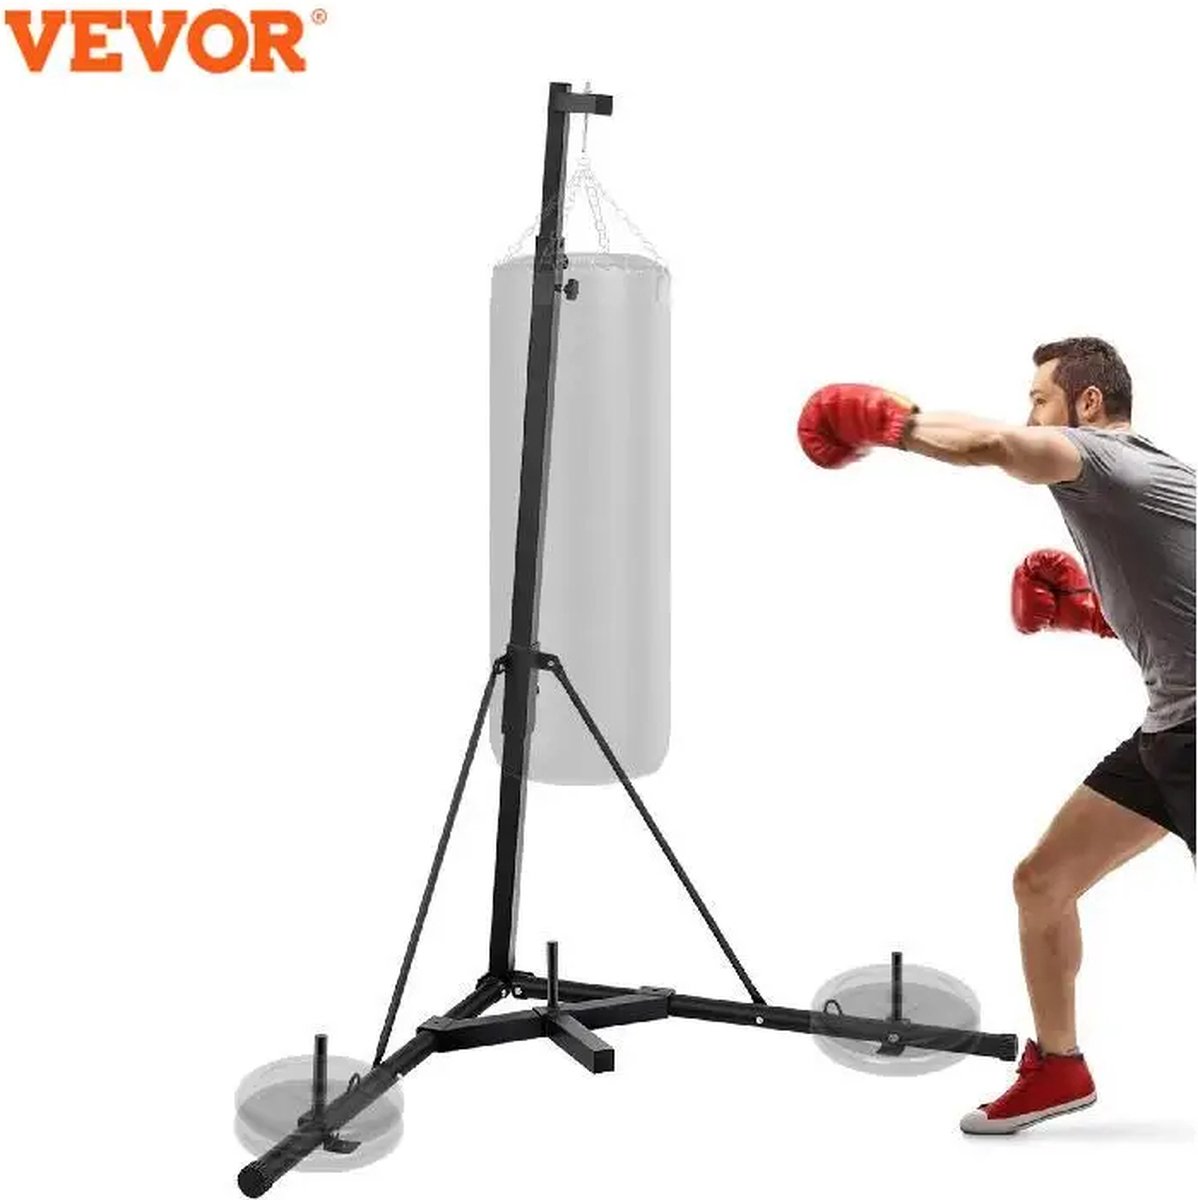 Vevor - Bokszak - Punch Bag - Vechtsport - Fitness - MMA - Training - Boksen